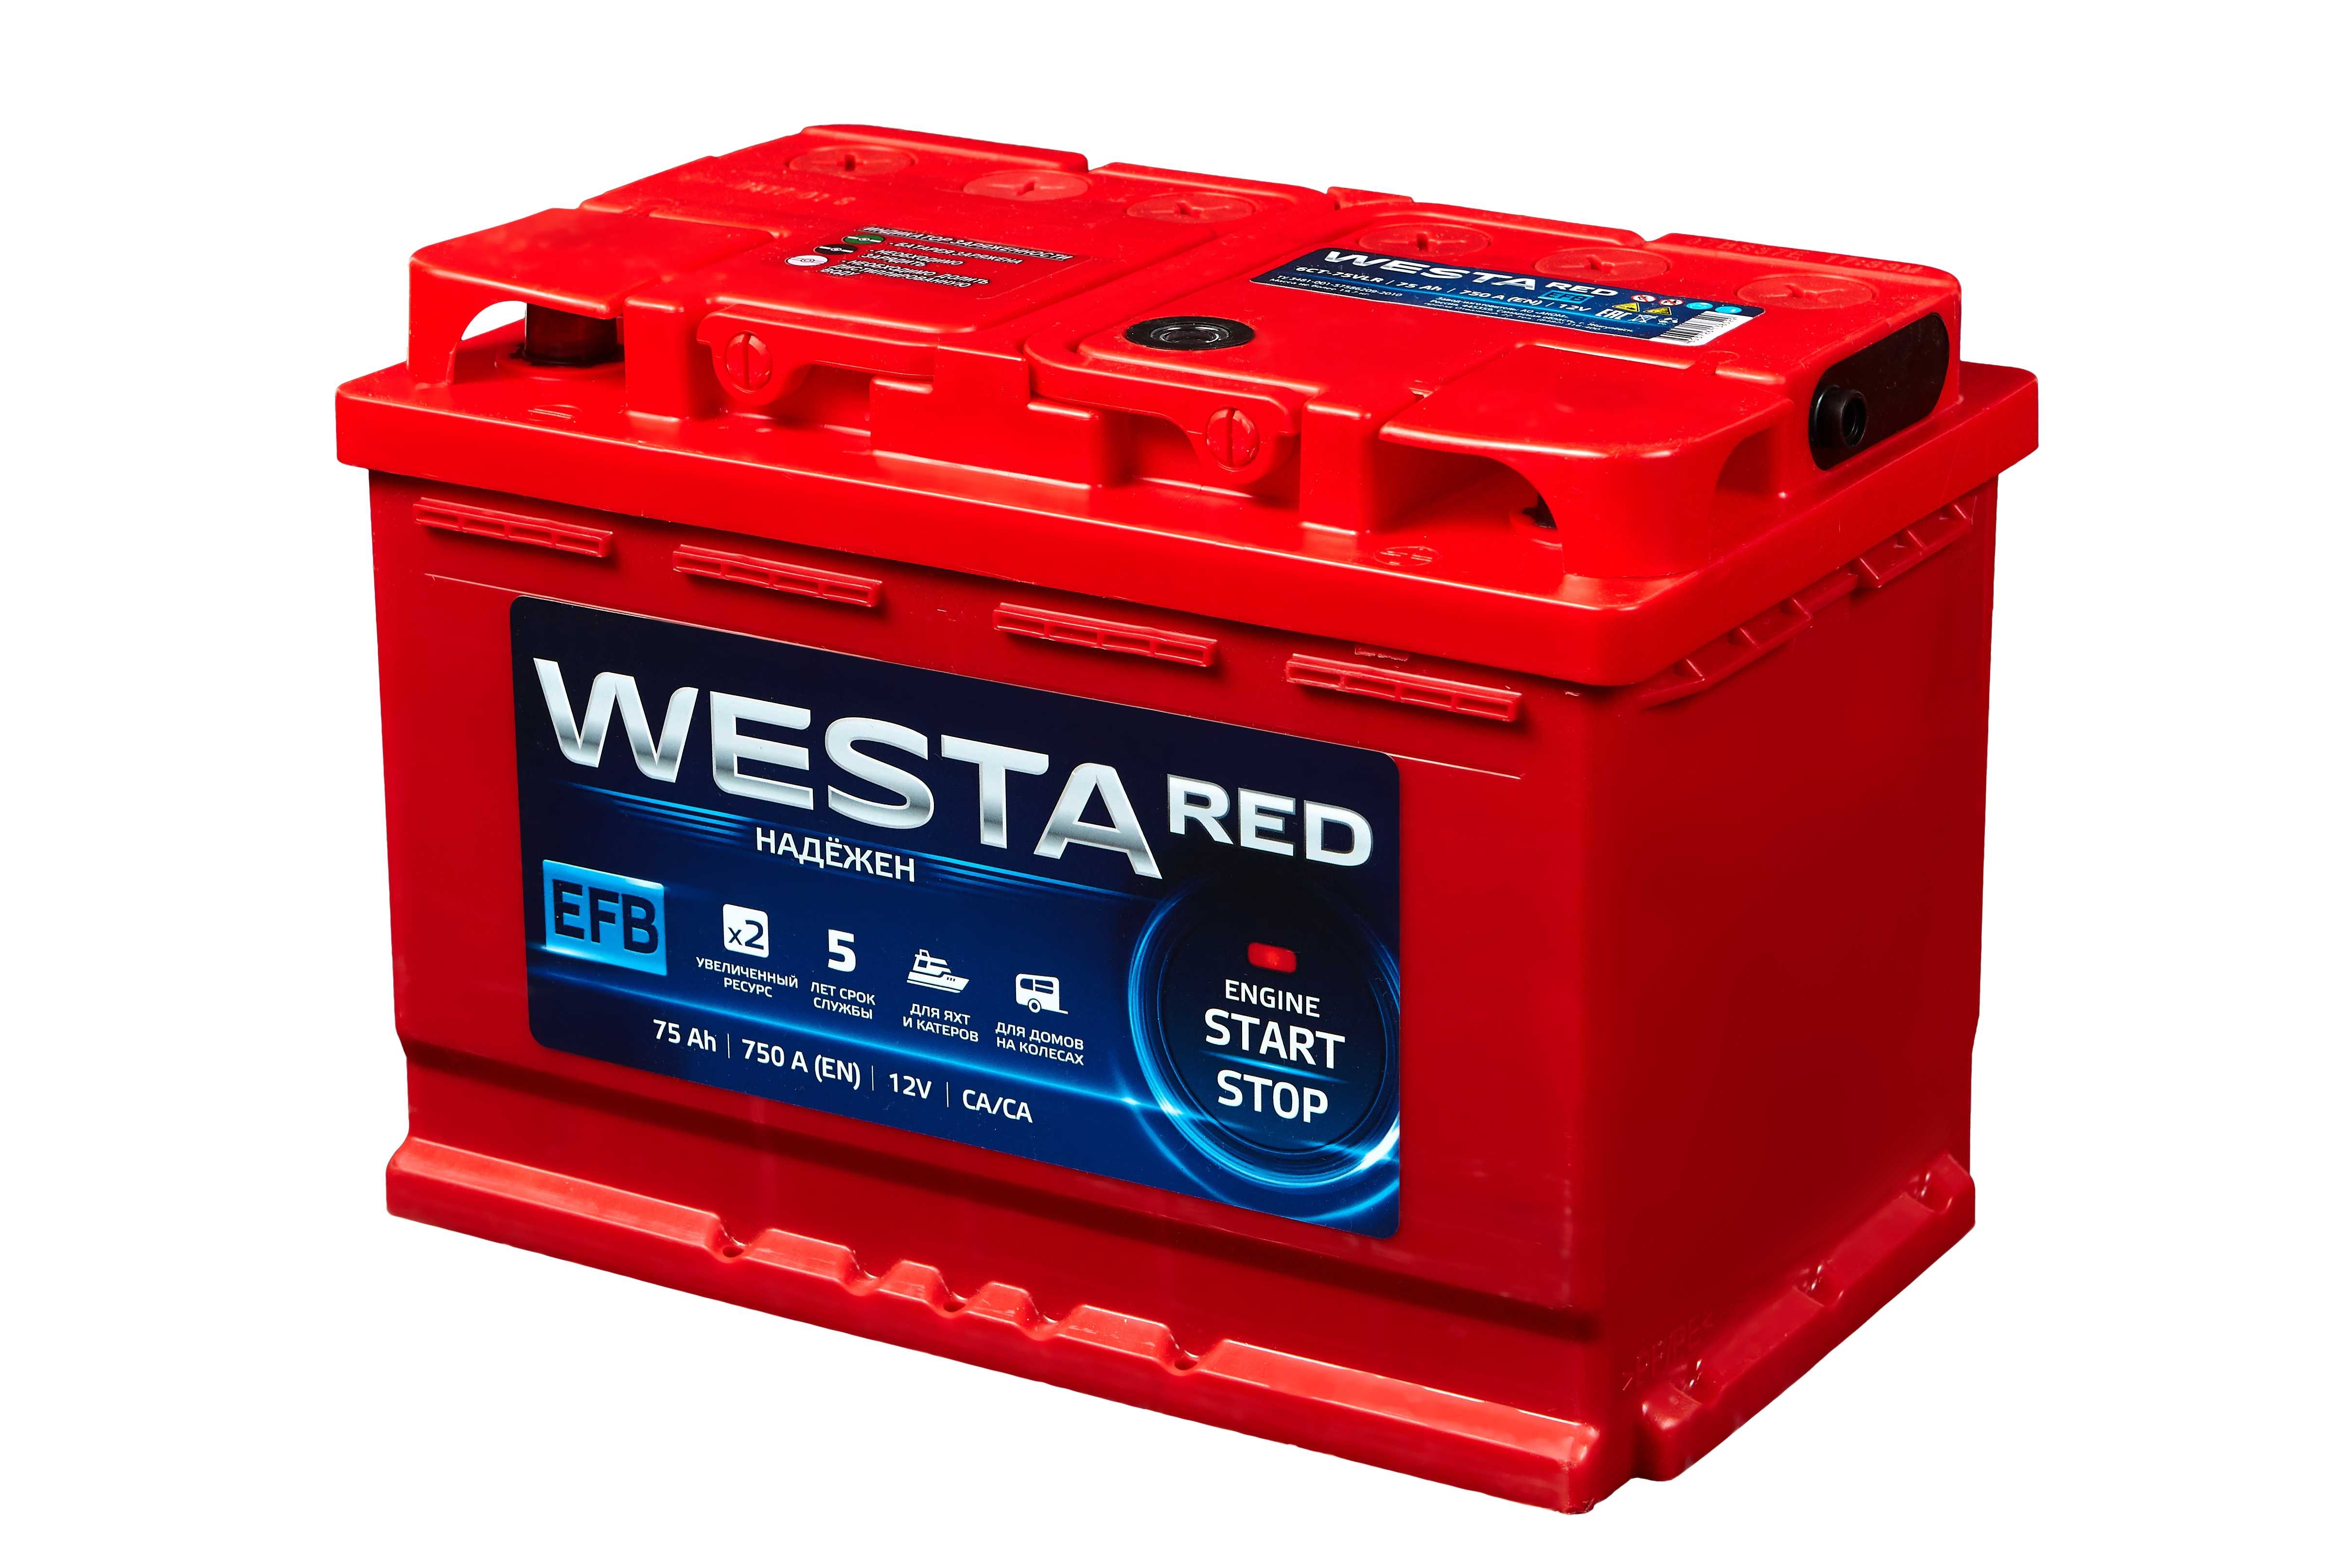 Аккумулятор vesta. Westa Red 60 a, 640 a, 6 CT -60. Westa Red аккумулятор разбор. ТОО "Кайнар-АКБ" Vesta Red 77ah.